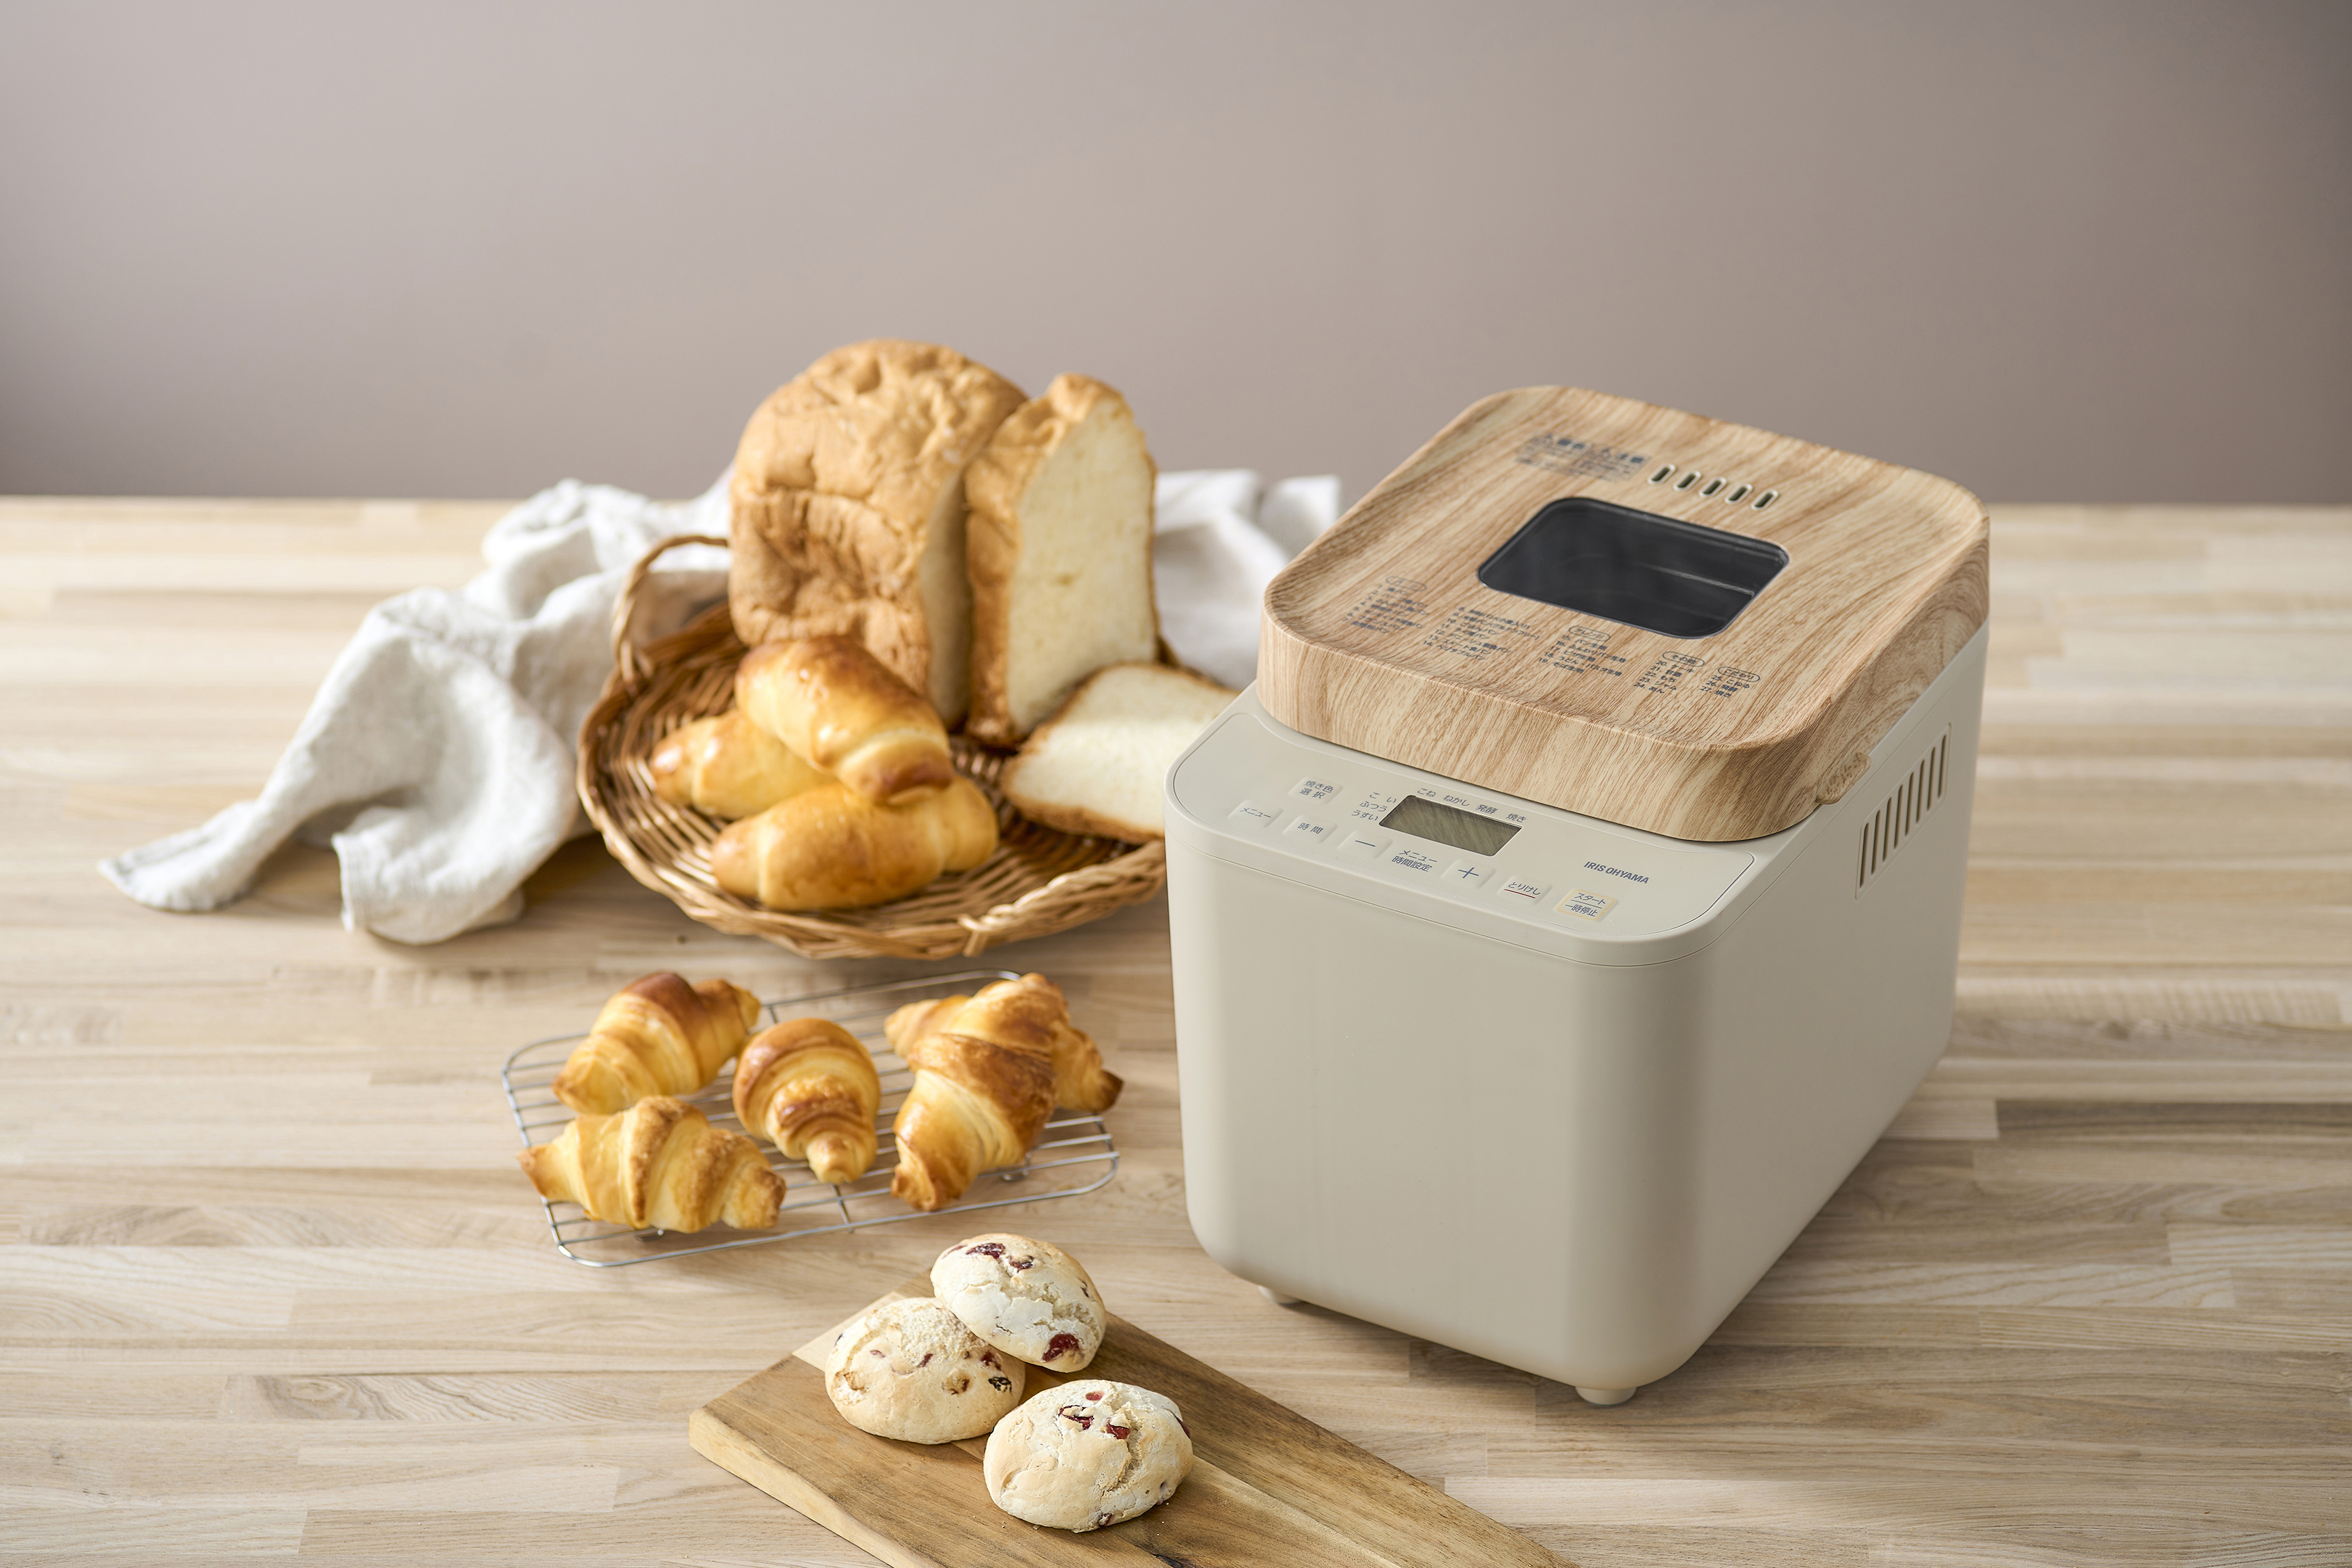 Bread machine "IBM-010-C"